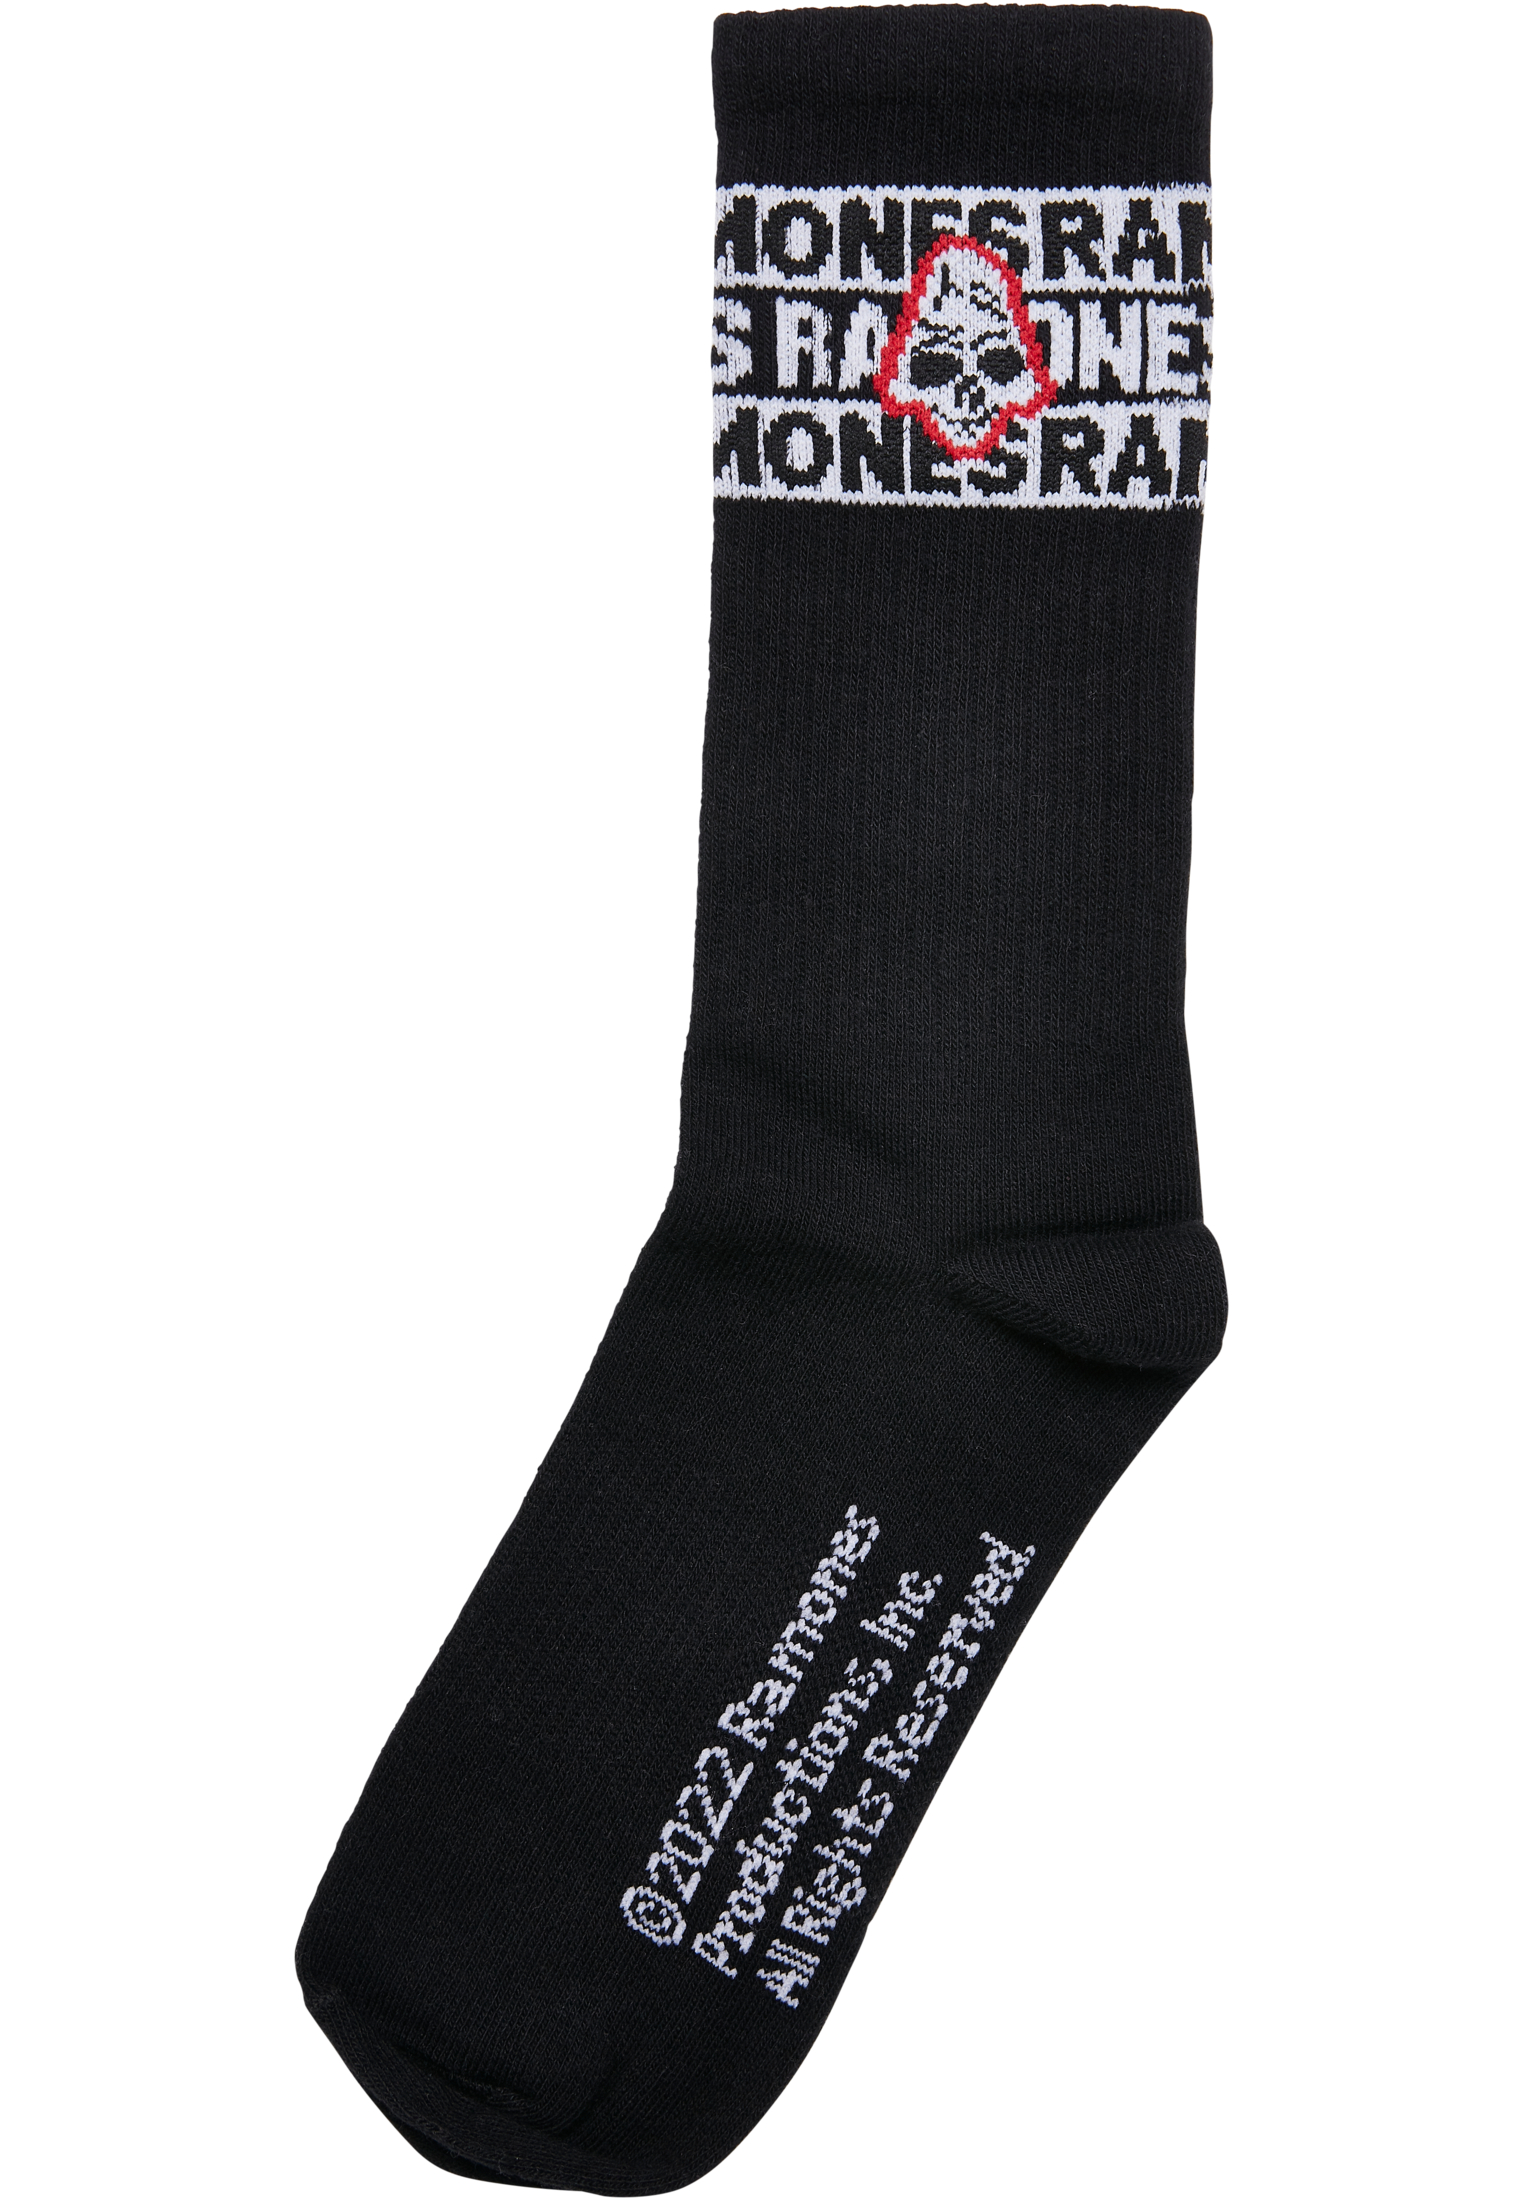  Ramones Skull Socks 2-Pack in Farbe black/white